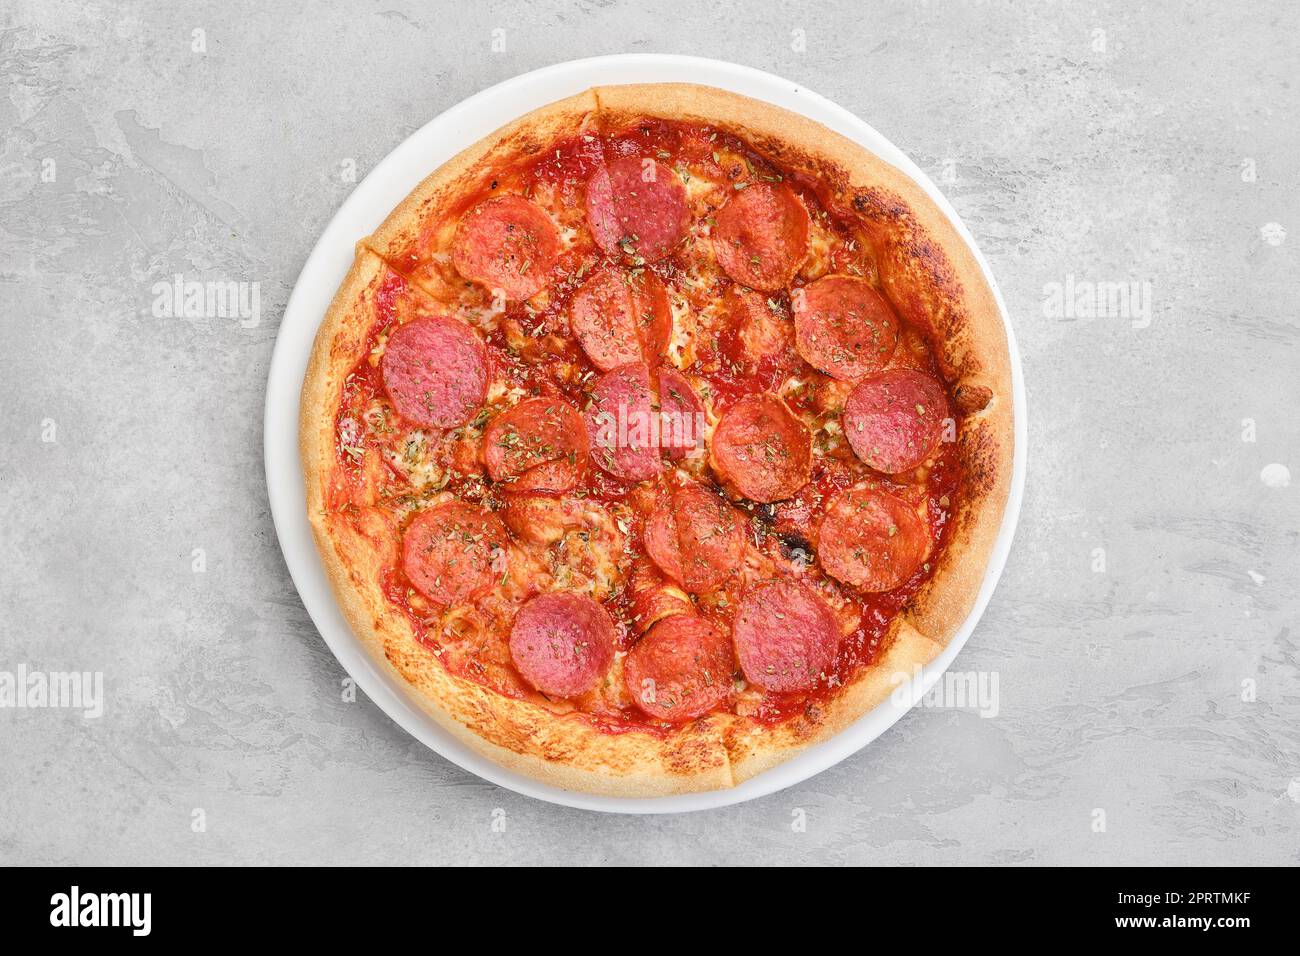 Vue de dessus de la petite pizza pepperoni Banque D'Images